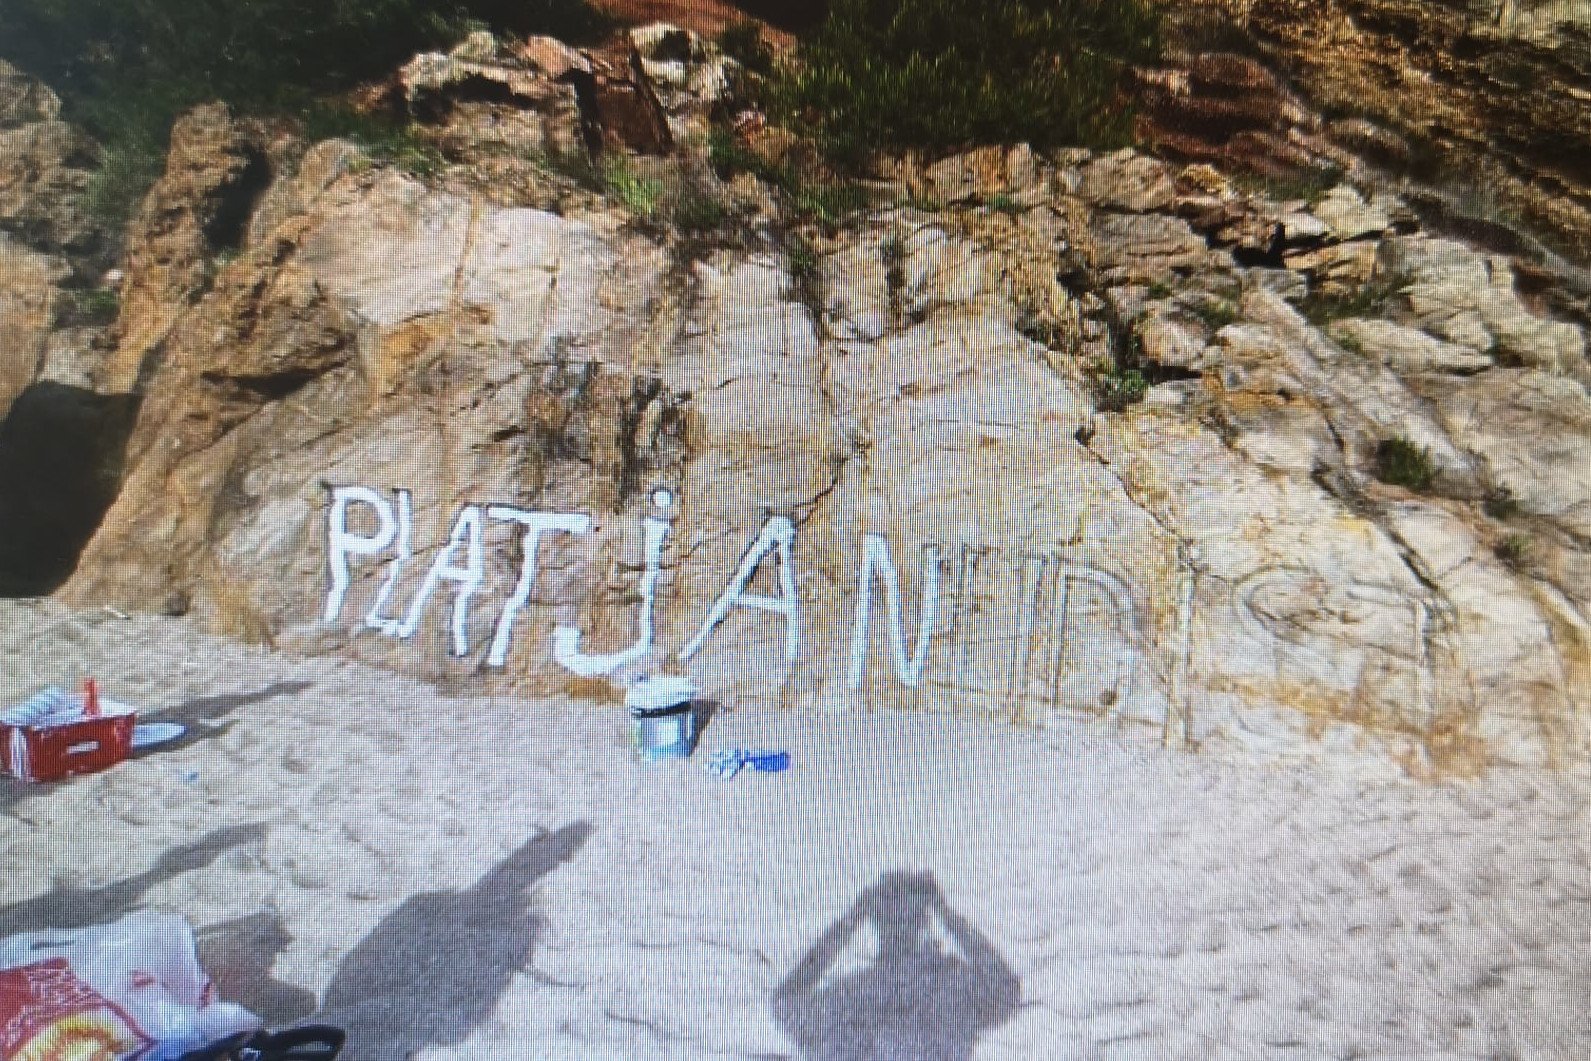 Multa de 1.420 euros por querer pintar 'platja nudista' en unas rocas en Begur